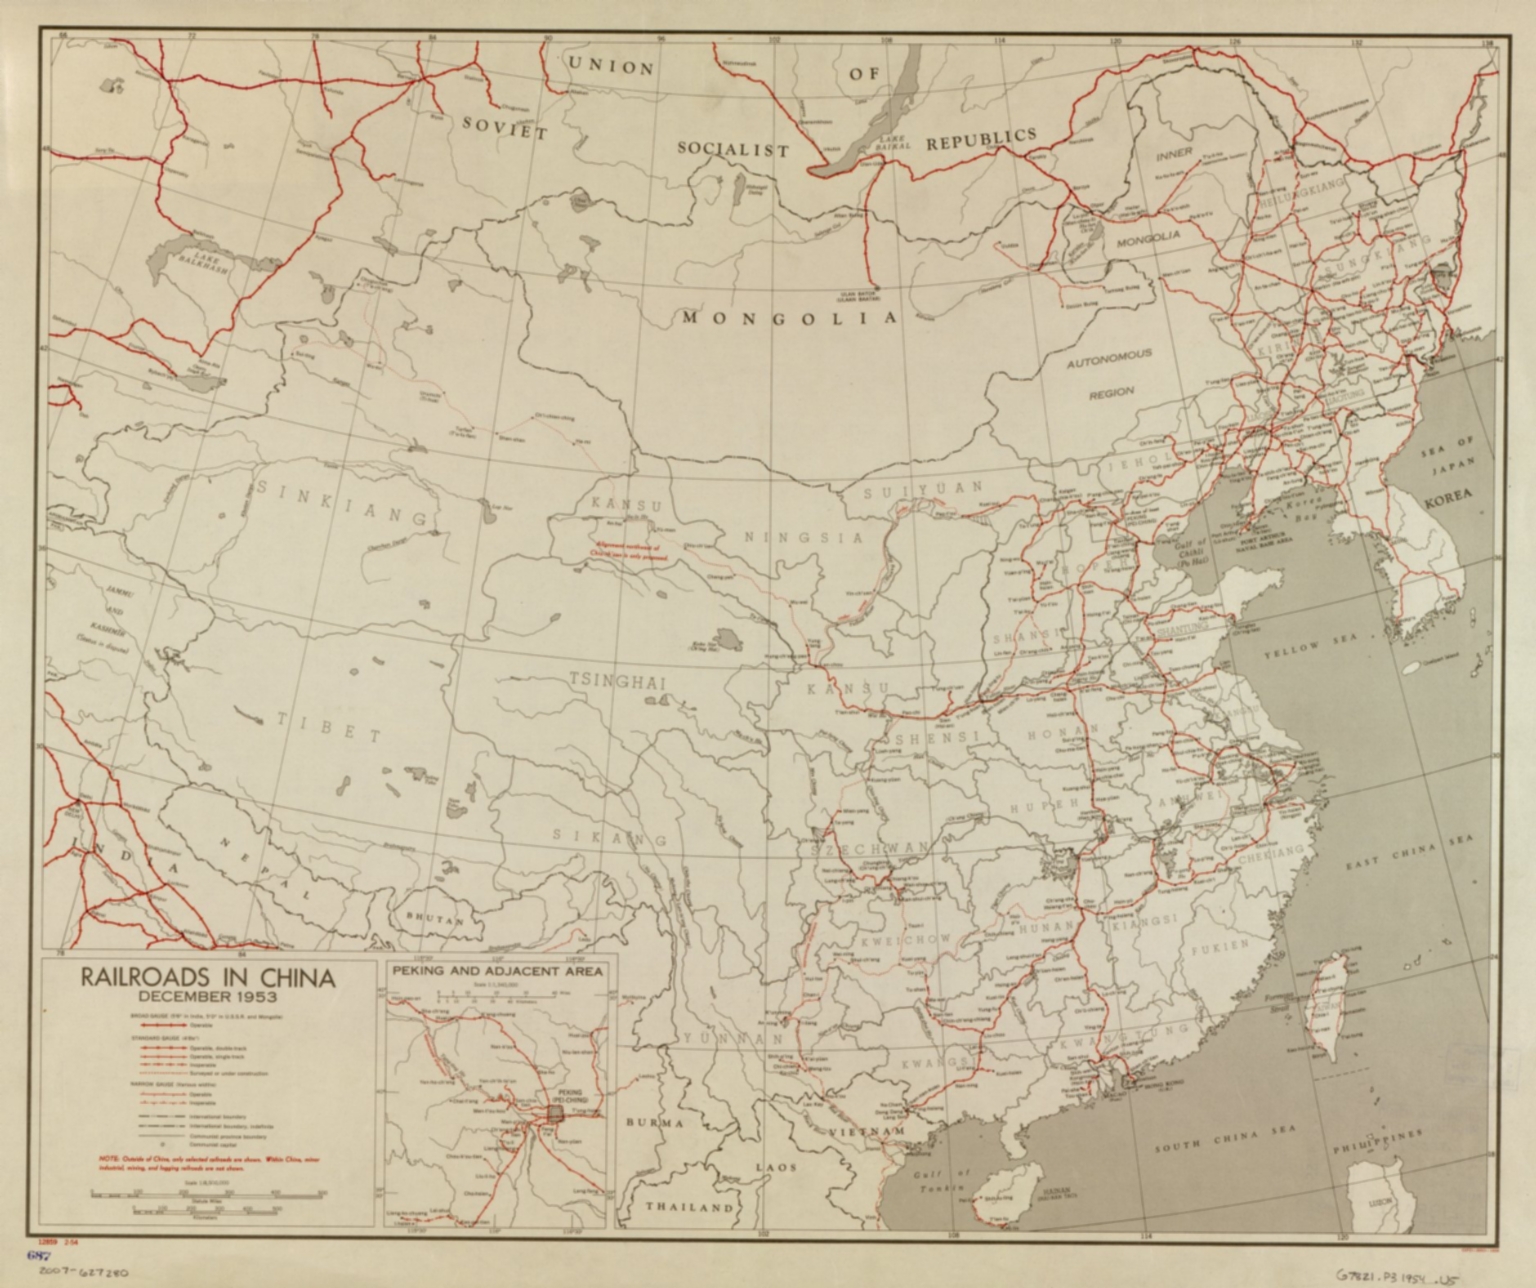 Railroads in China, December 1953